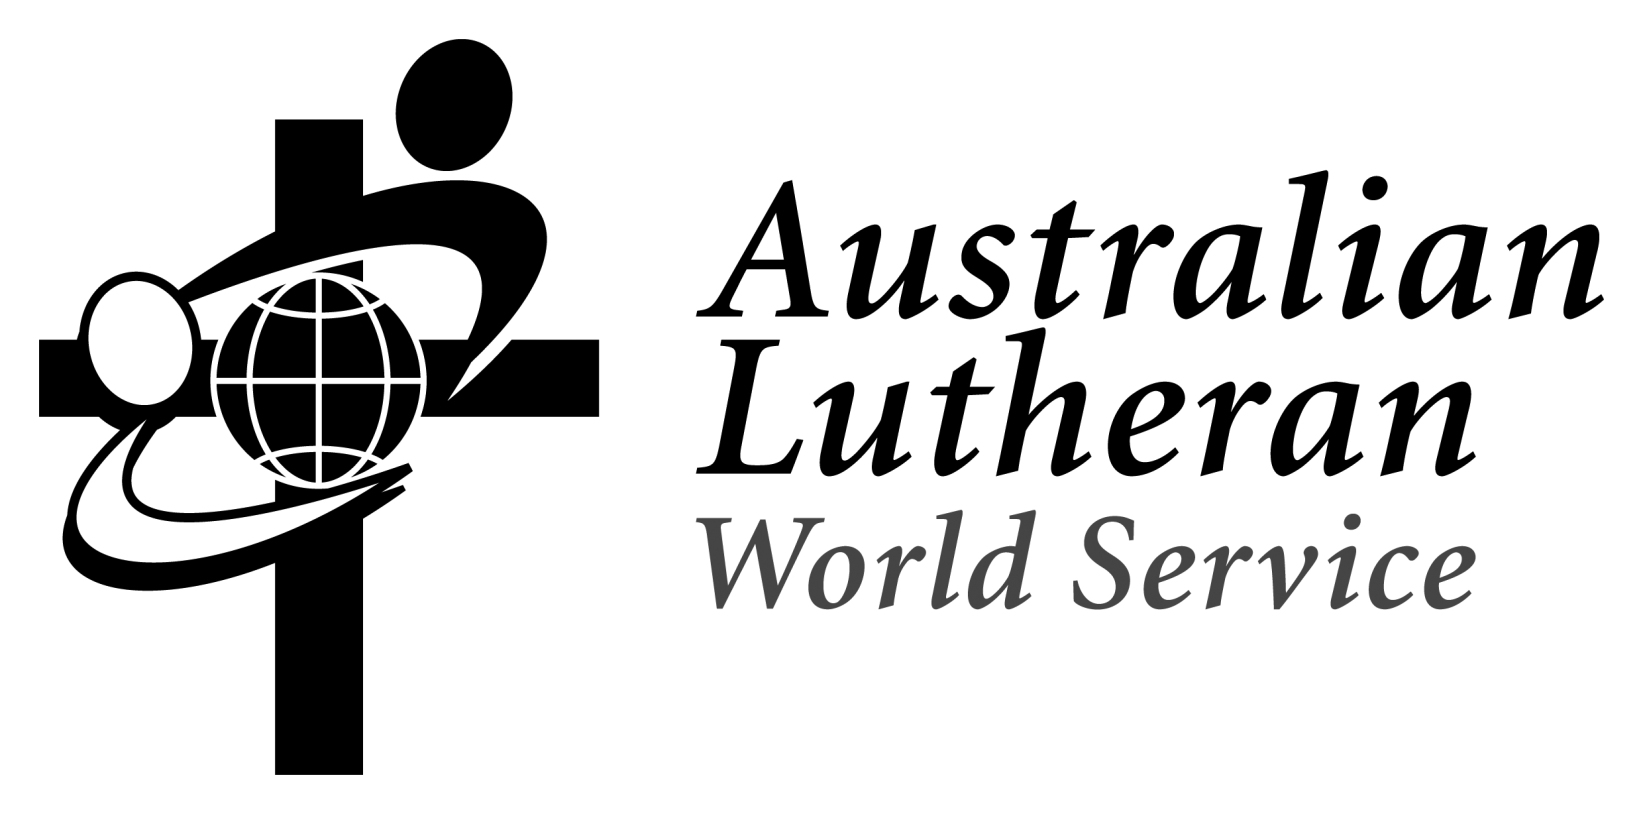 Australian Lutheran World Service